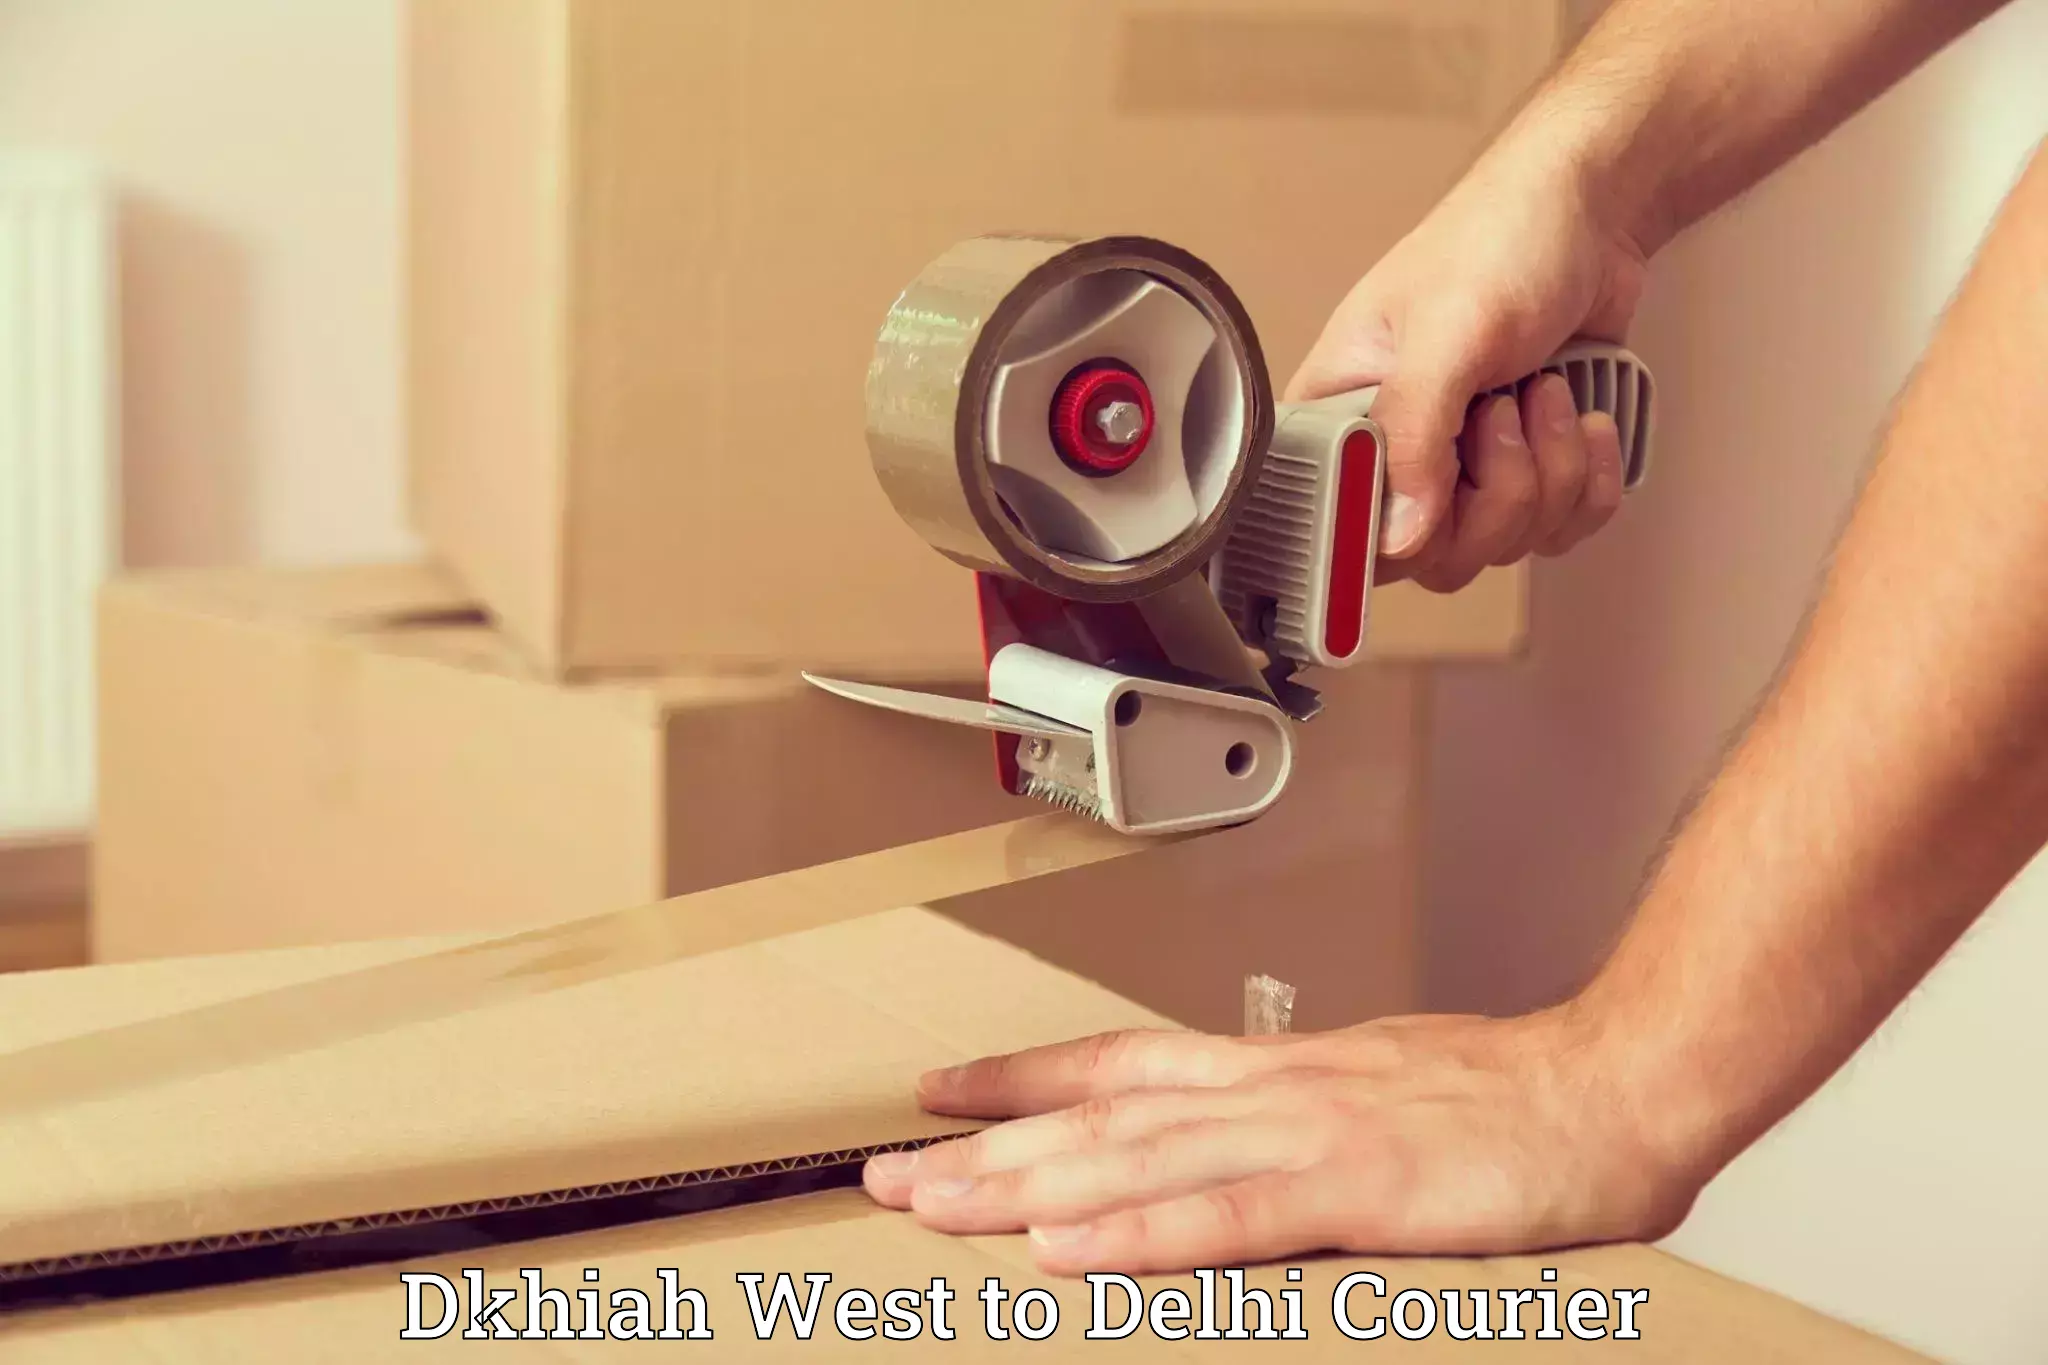 Doorstep luggage pickup Dkhiah West to Delhi